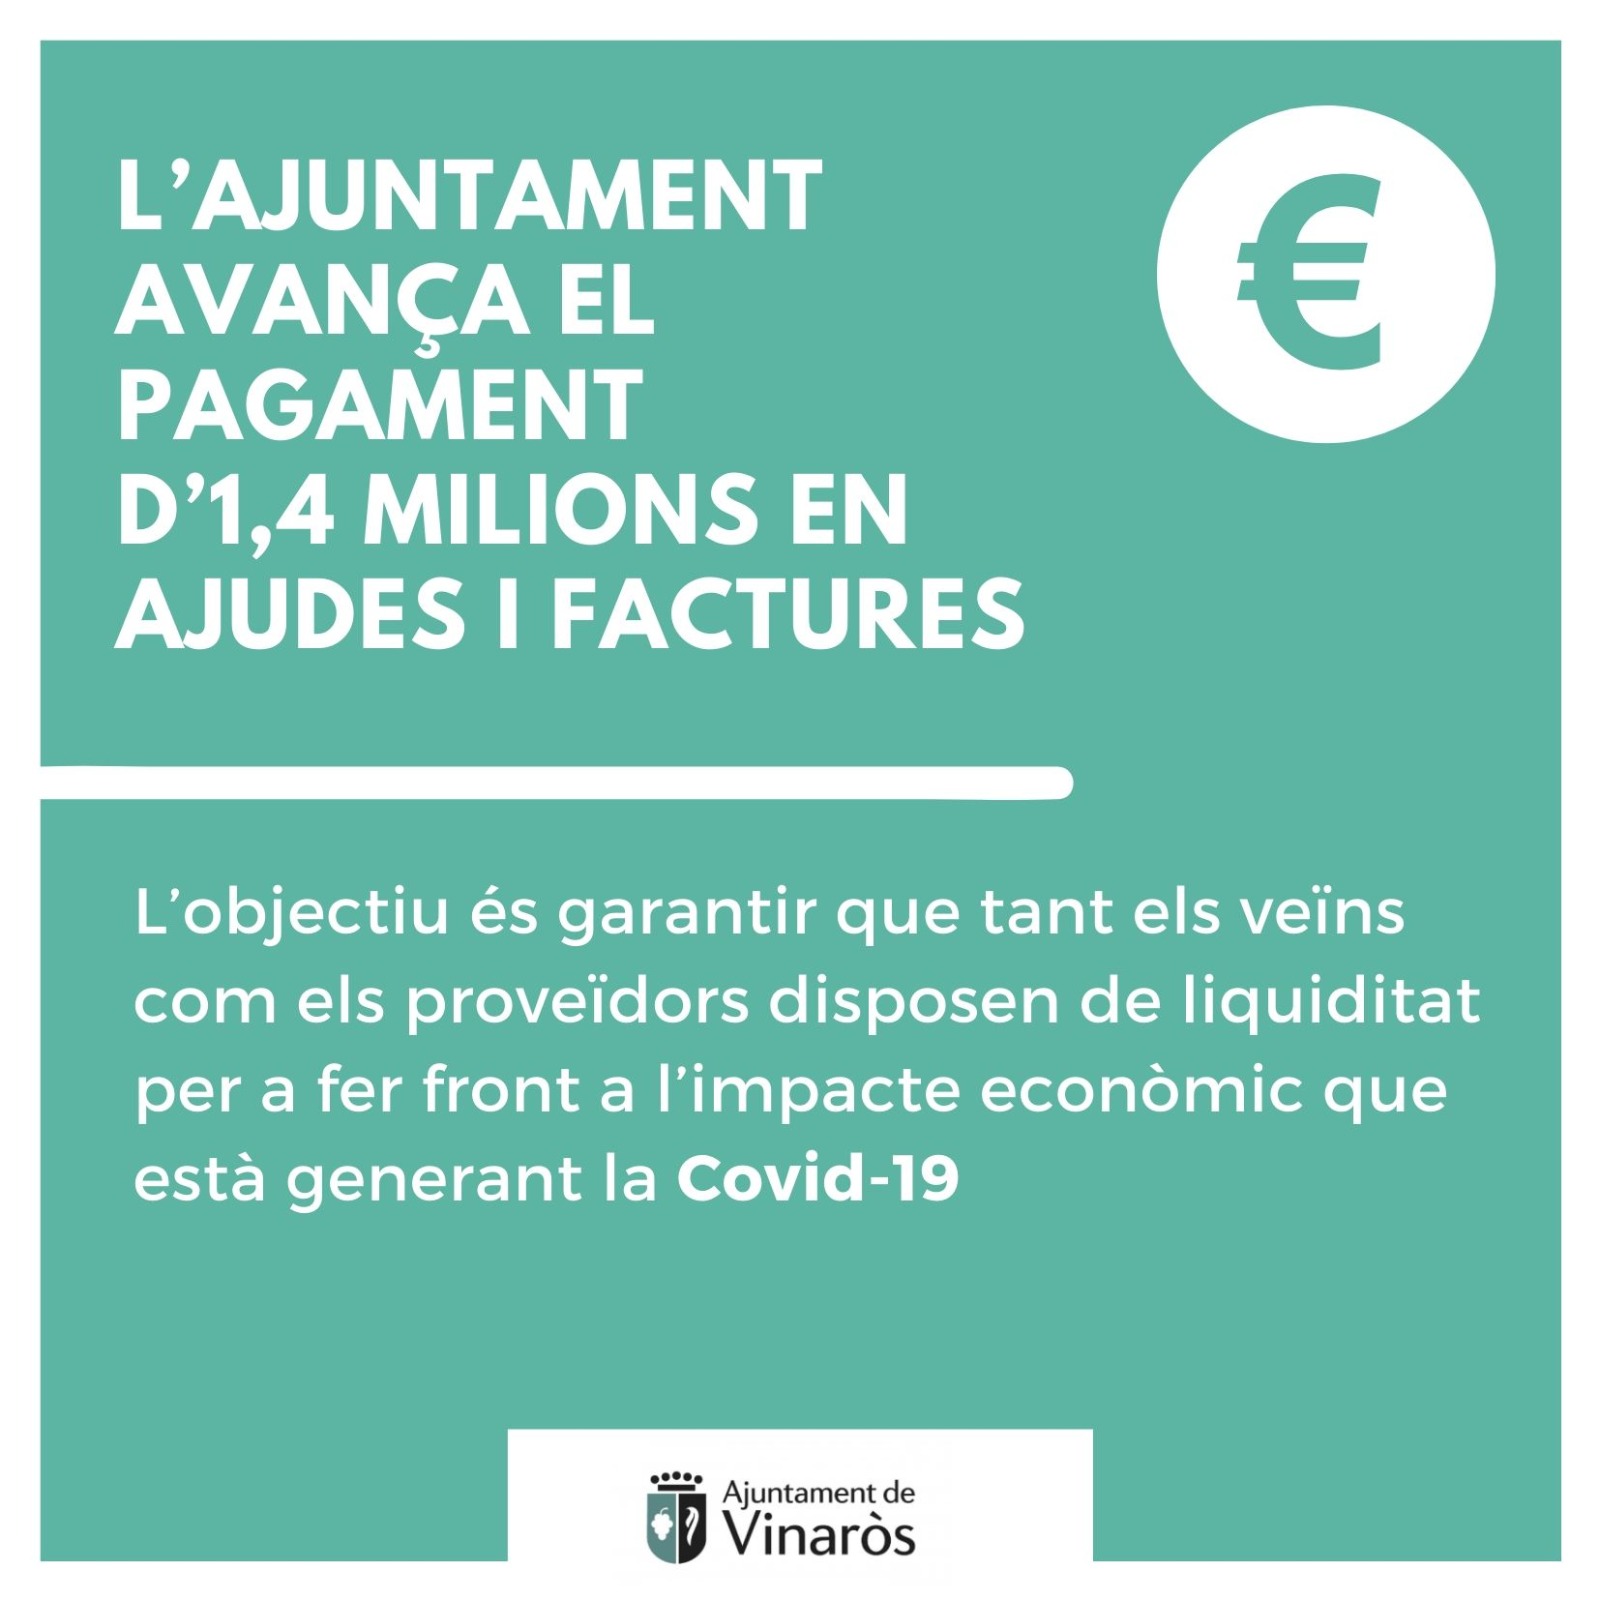 L’Ajuntament de Vinaròs ordena el pagament d’1,4 milions en ajudes i factures